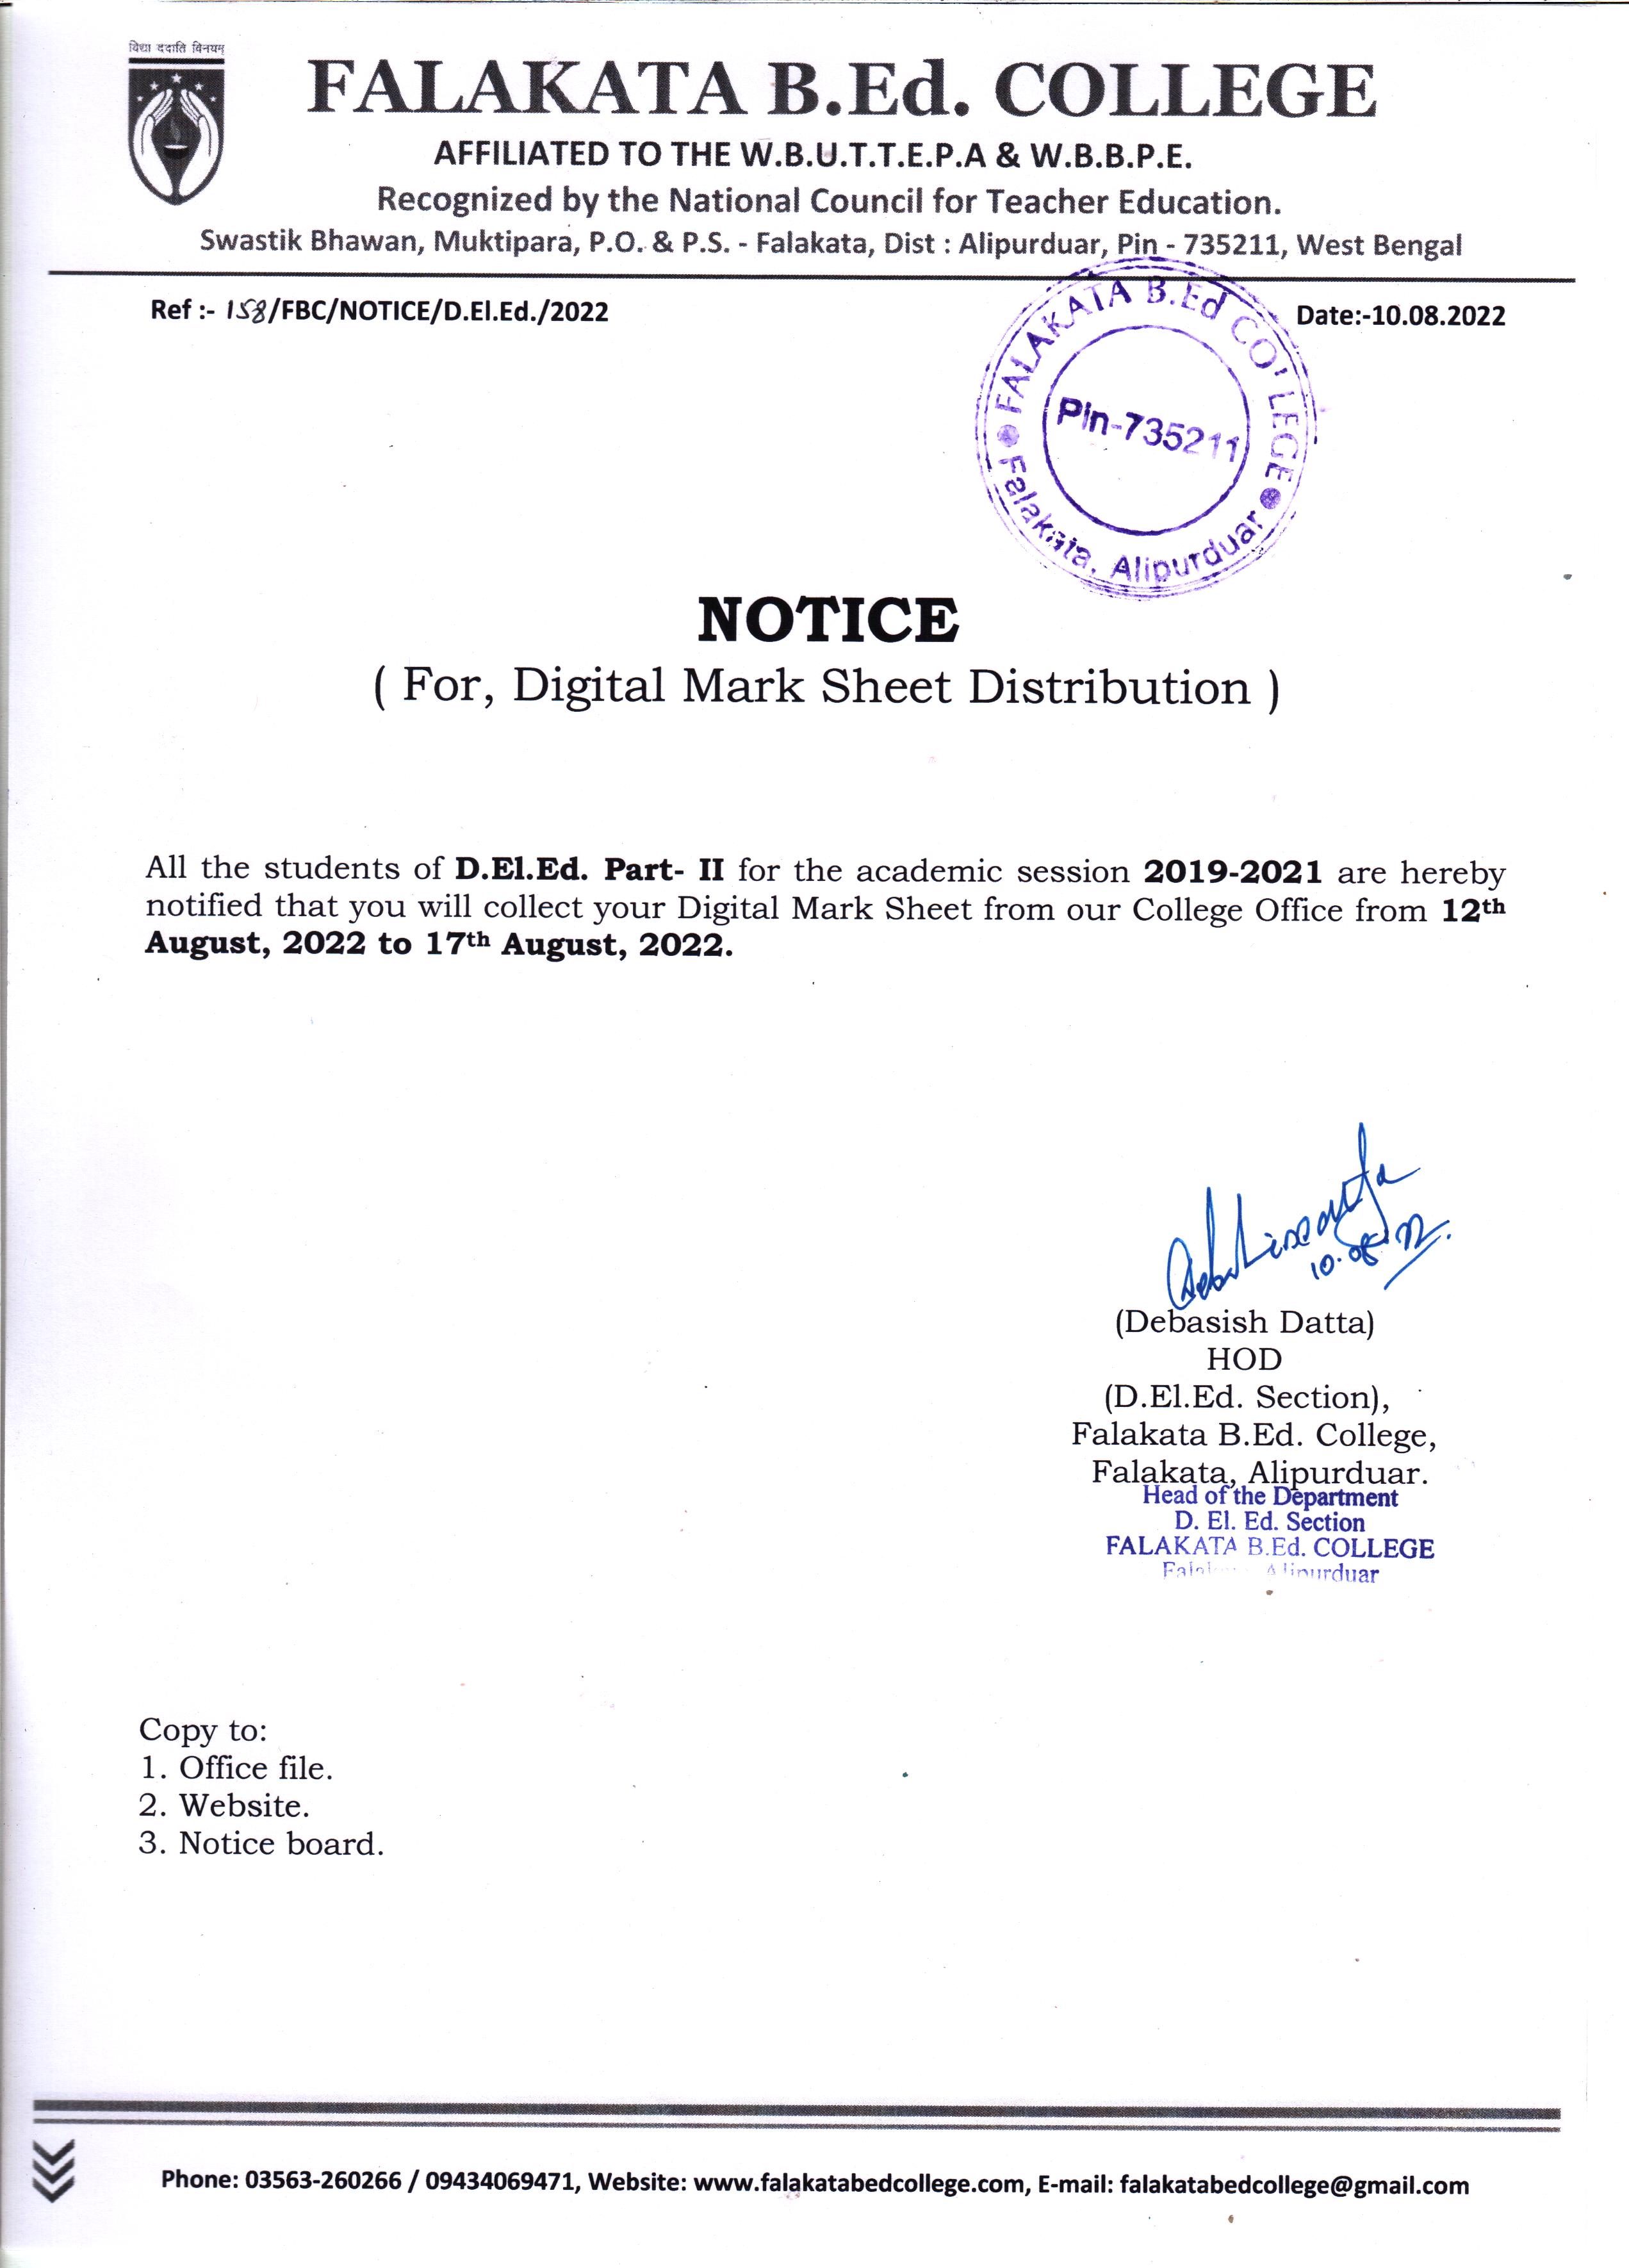 Notice Regarding Digital Marksheet Distribution